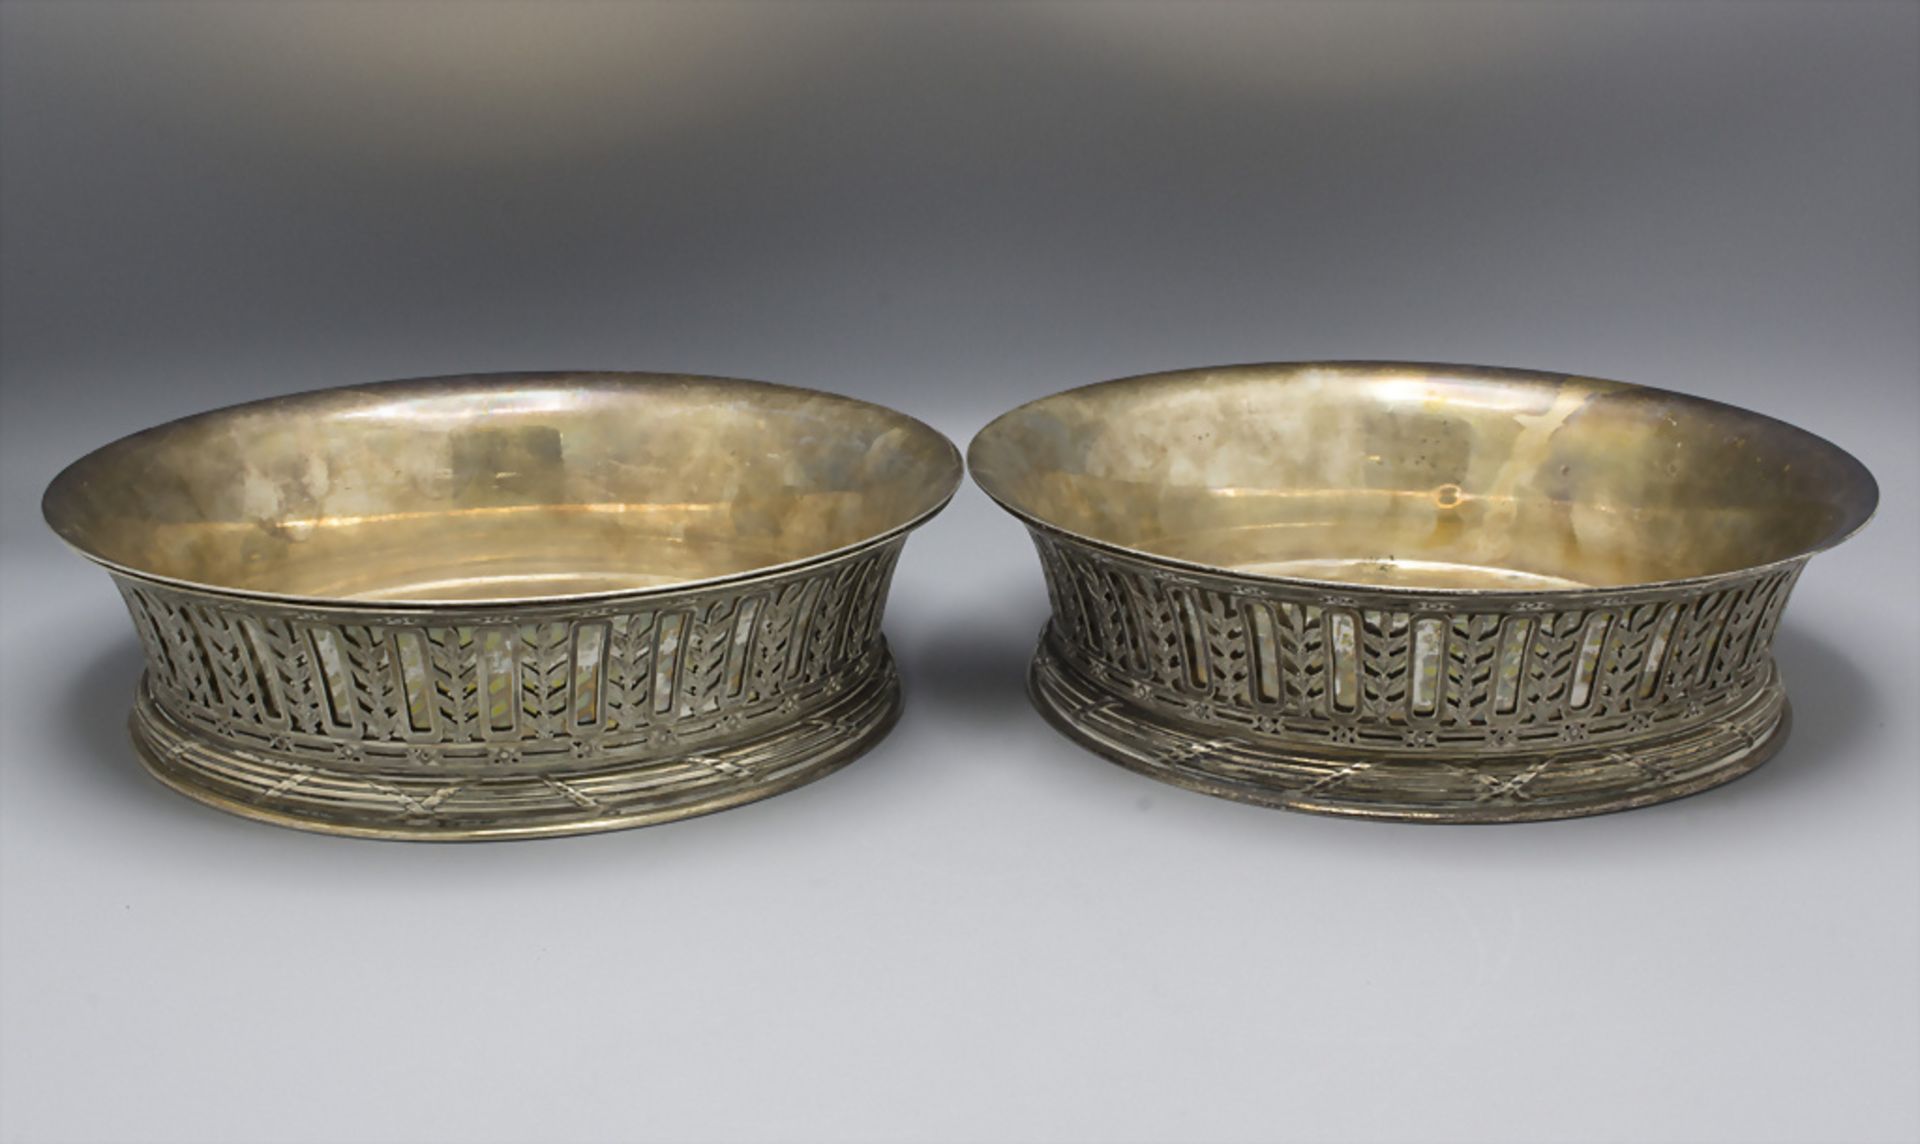 Paar Silberschalen / A pair of silver bowls, Paris, um 1900